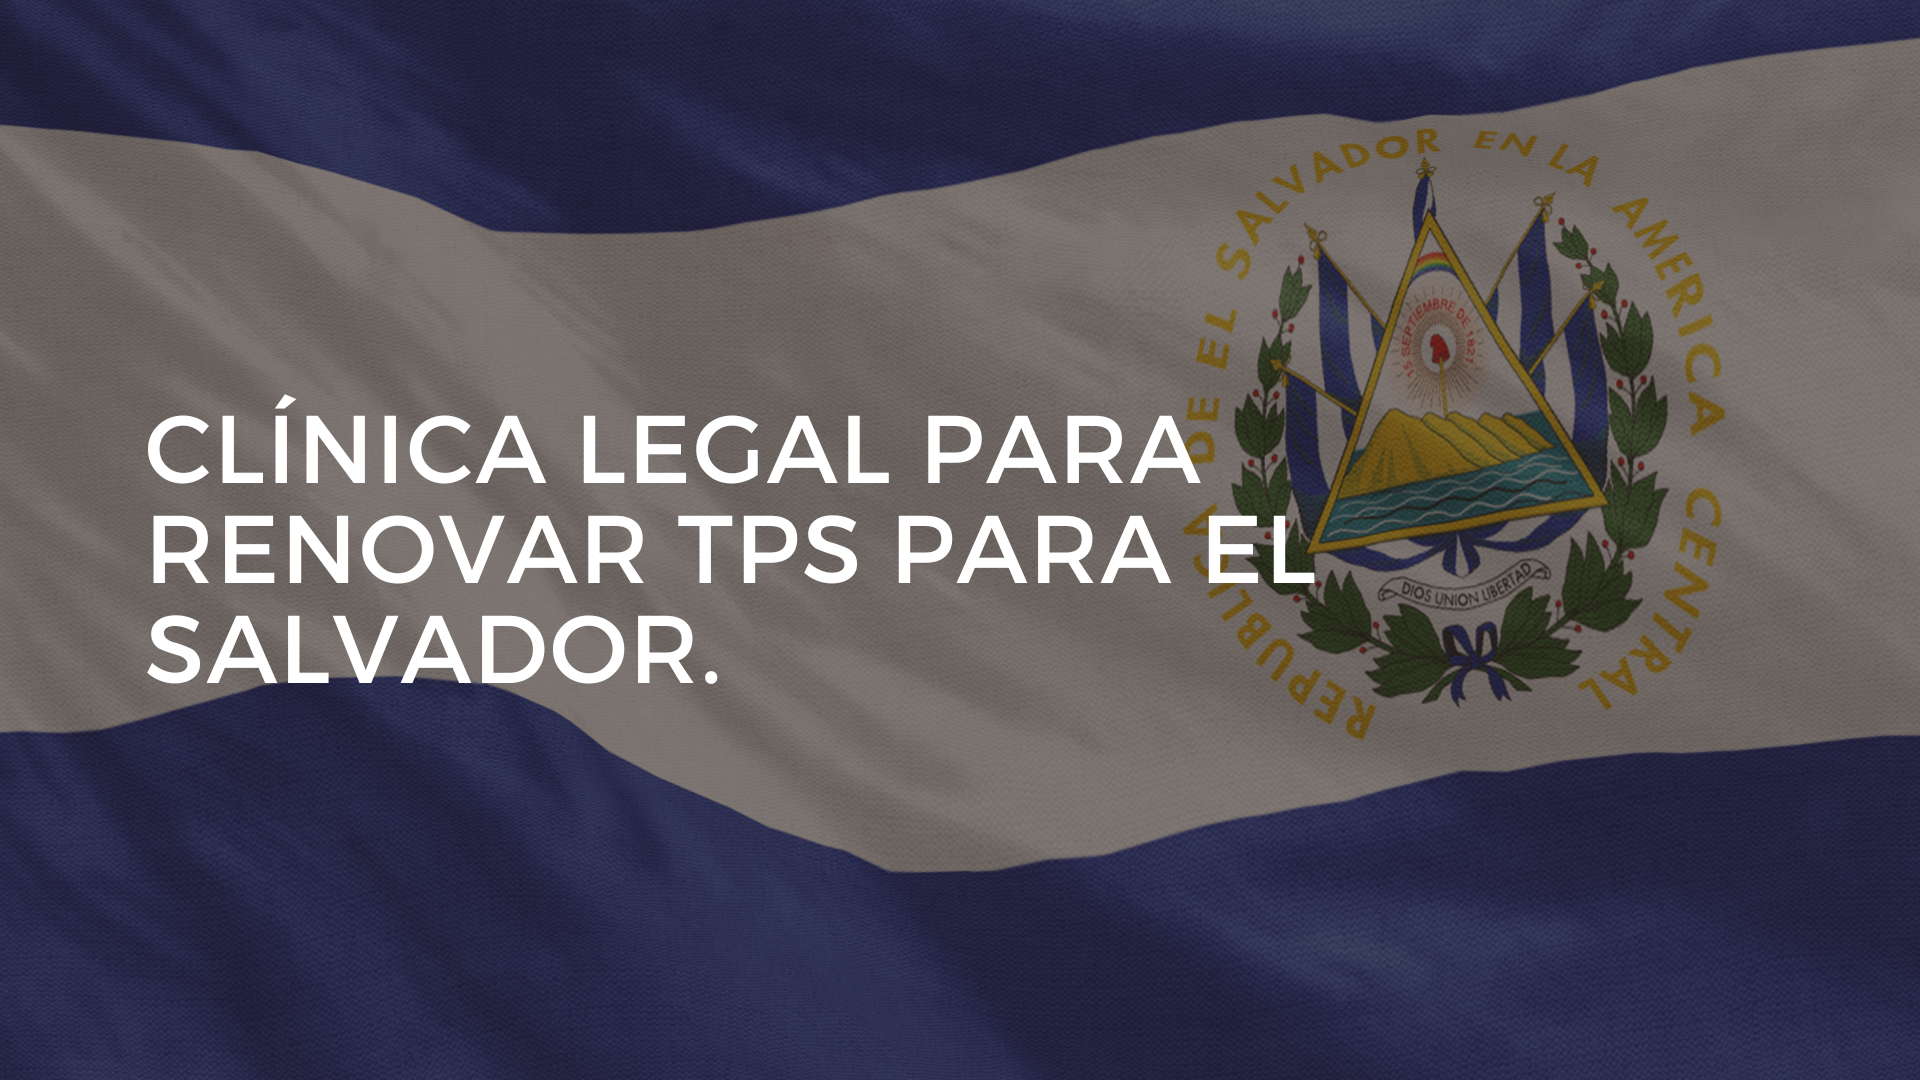 CLÍNICA LEGAL PARA RENOVAR TPS PARA EL SALVADOR